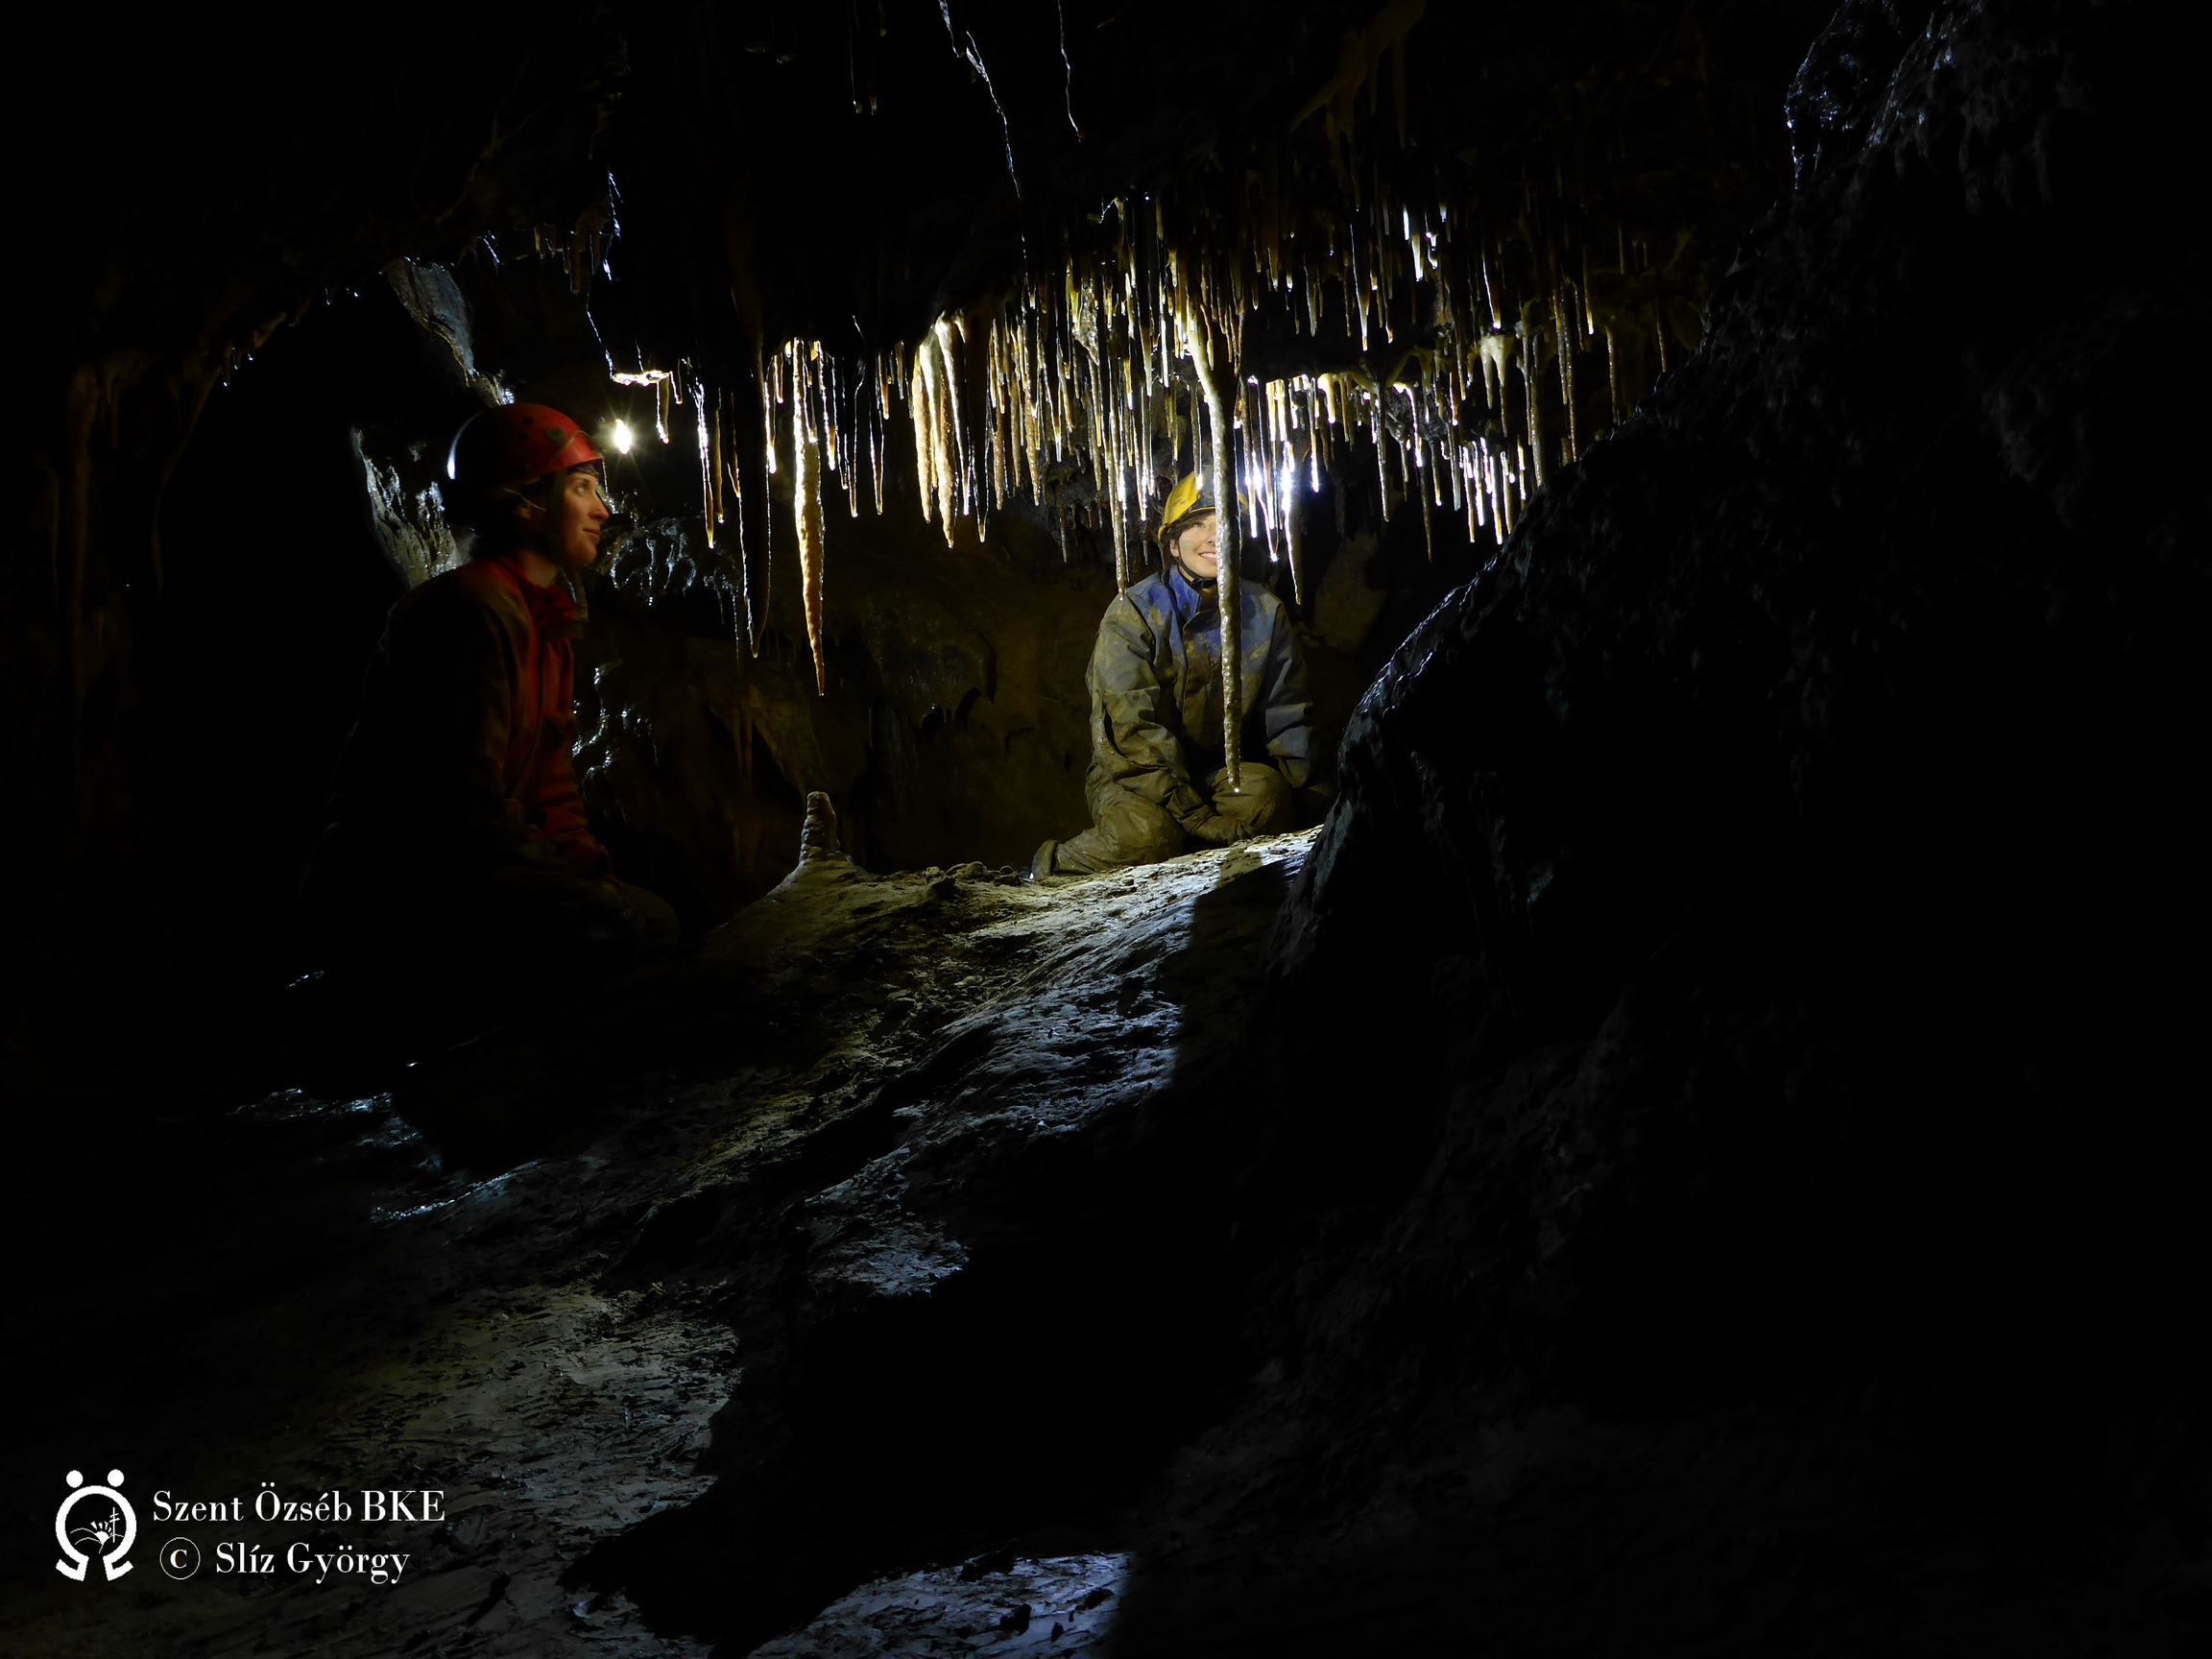 István-lápai-barlang, fosszilis járat a drótkötélhíd túloldala közelében